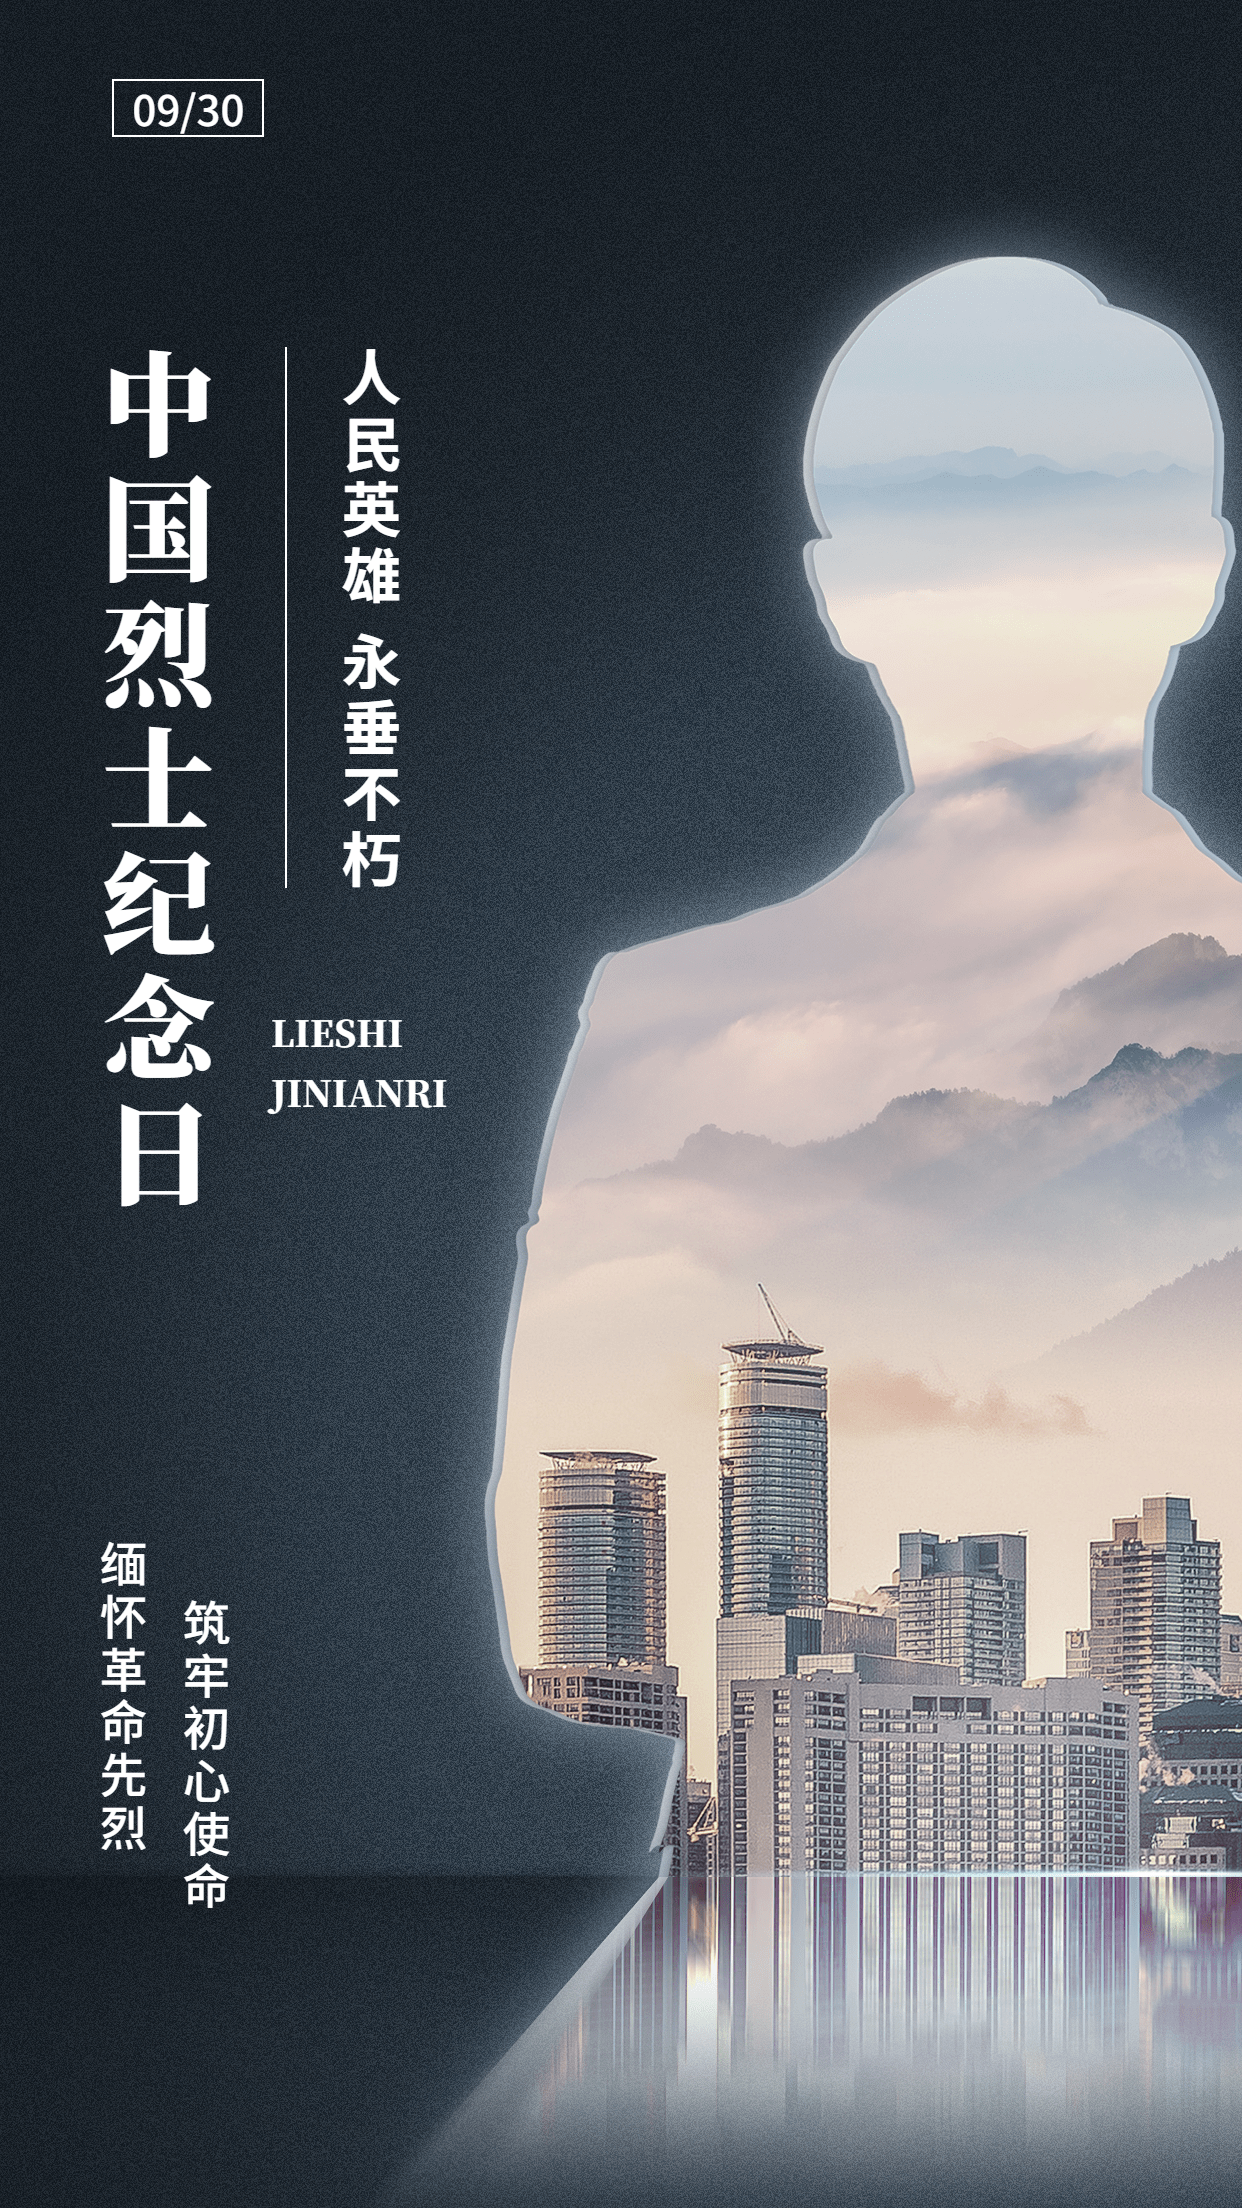 中国烈士纪念日节日宣传简约合成手机海报